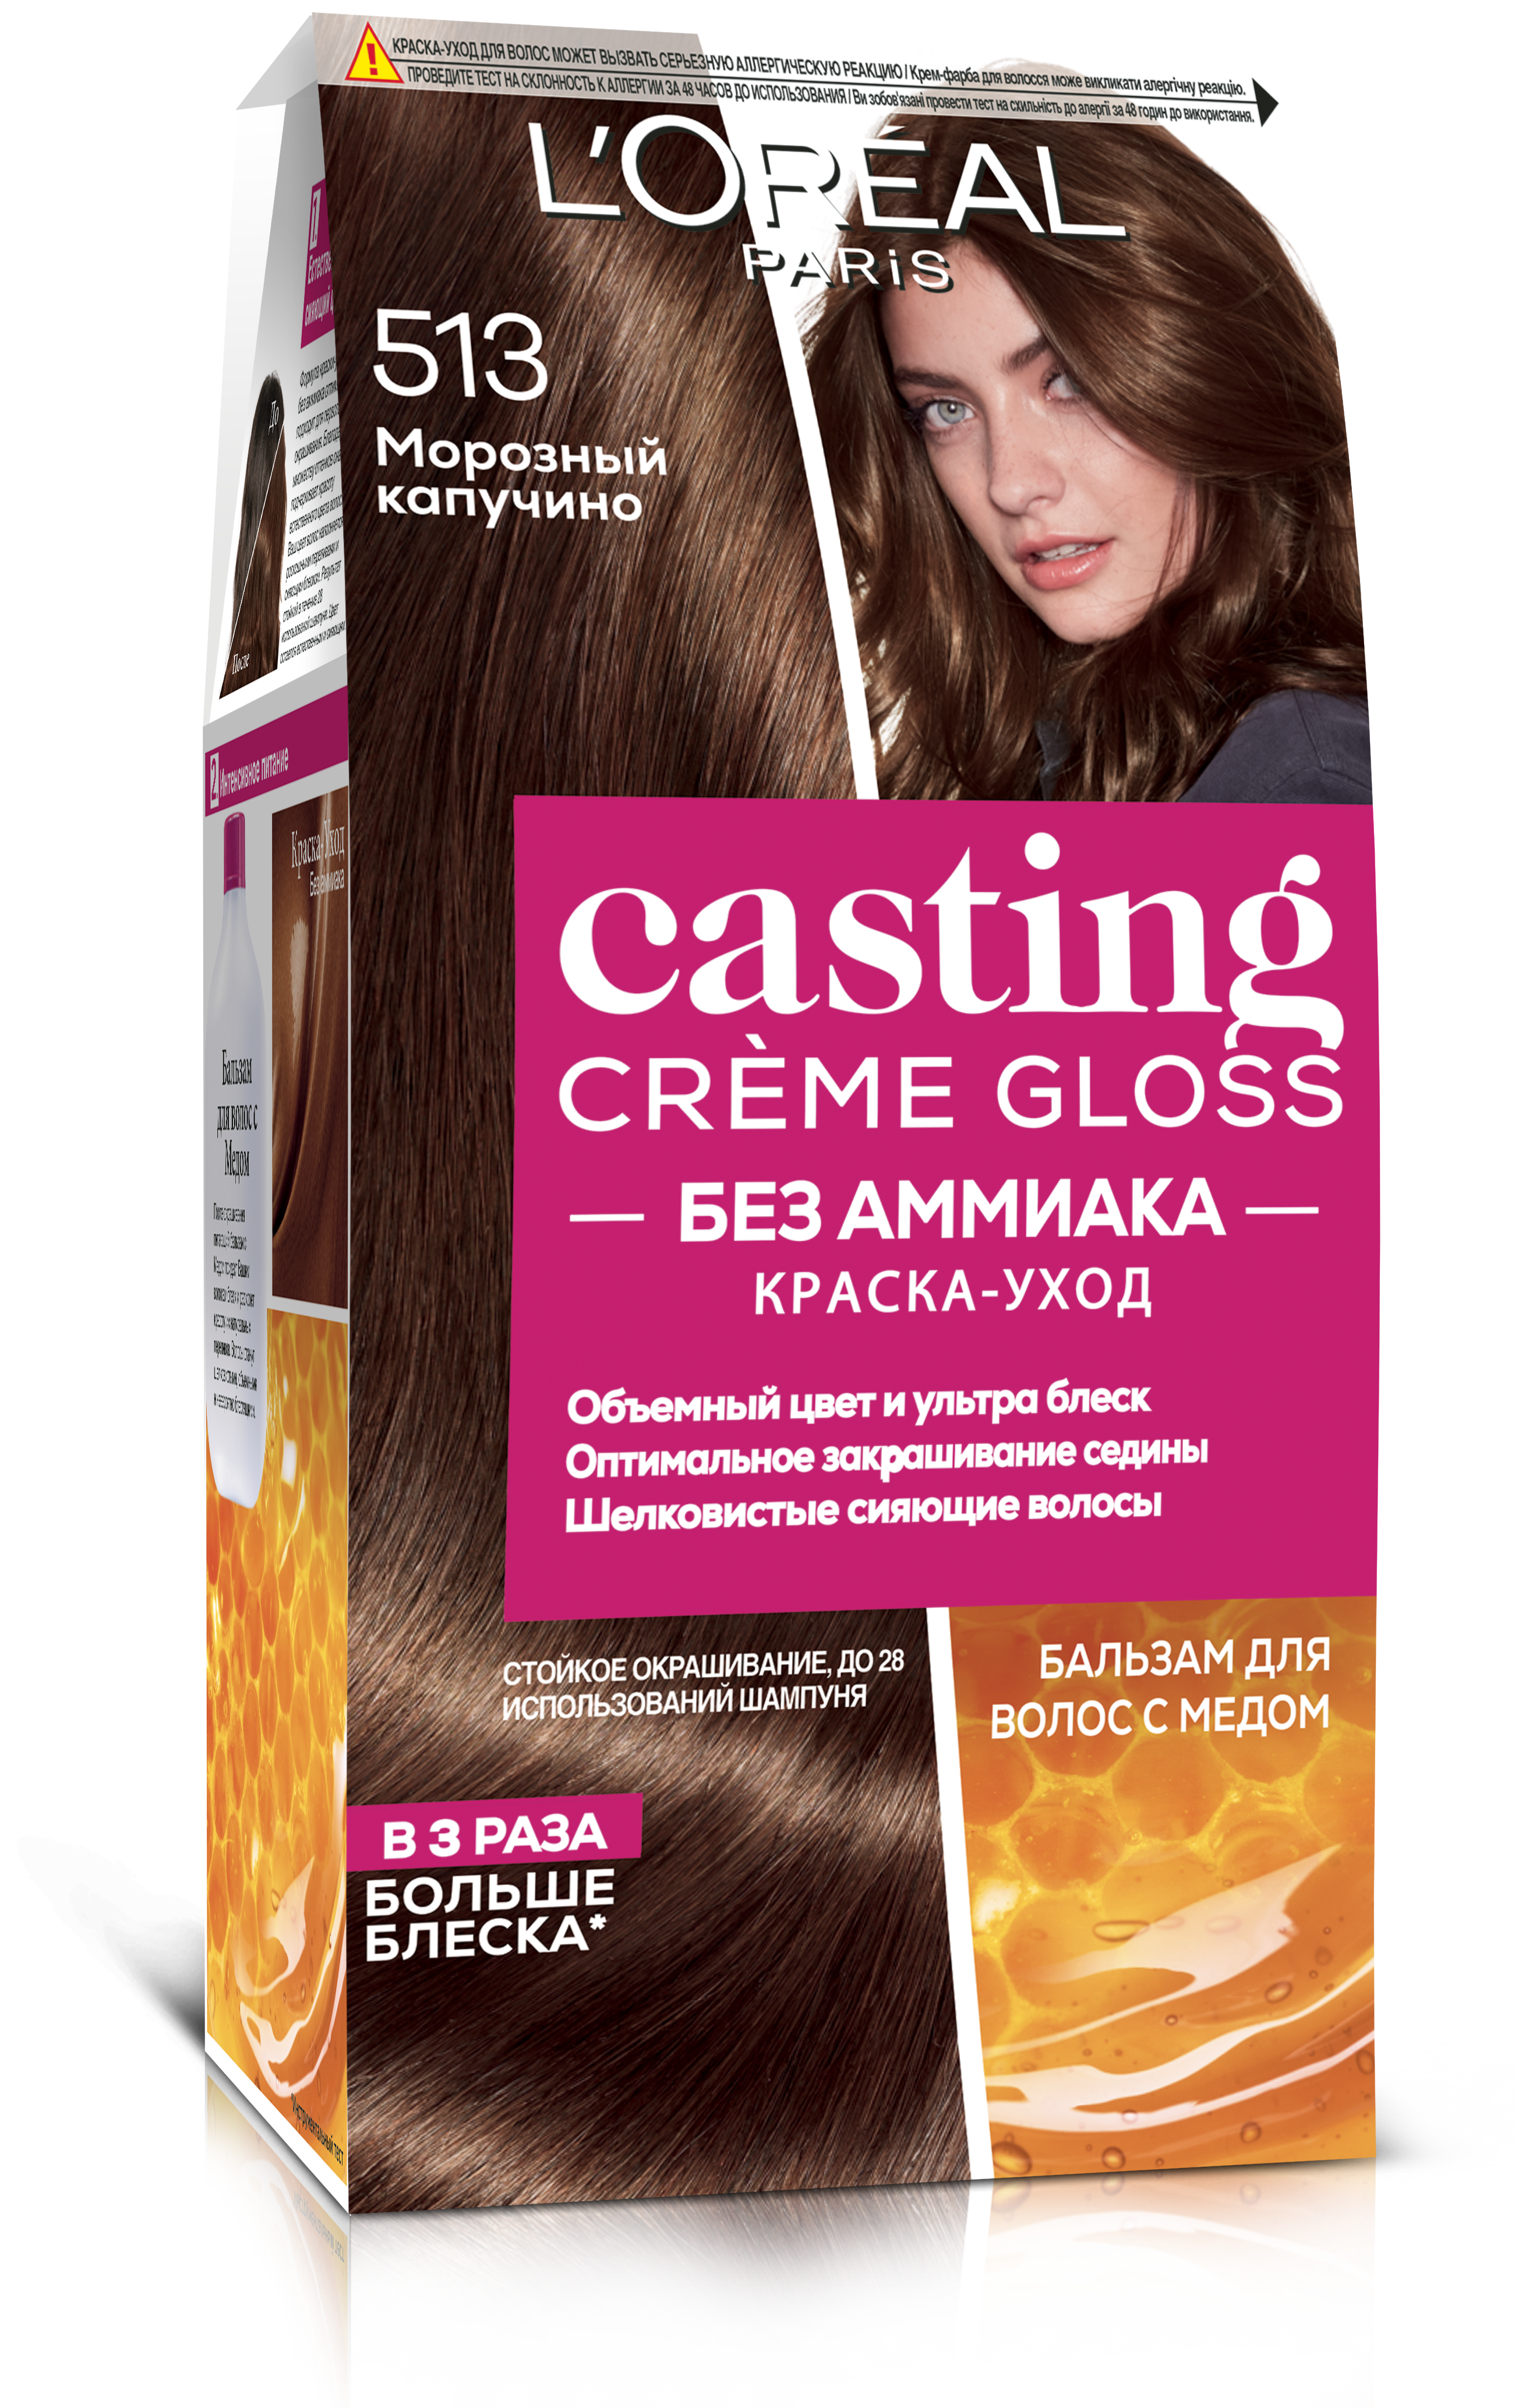 Краска-уход для волос без аммиака L'Oreal Paris Casting Creme Gloss, тон 513 (Морозный капучино), 120 мл (A5713976) - фото 1